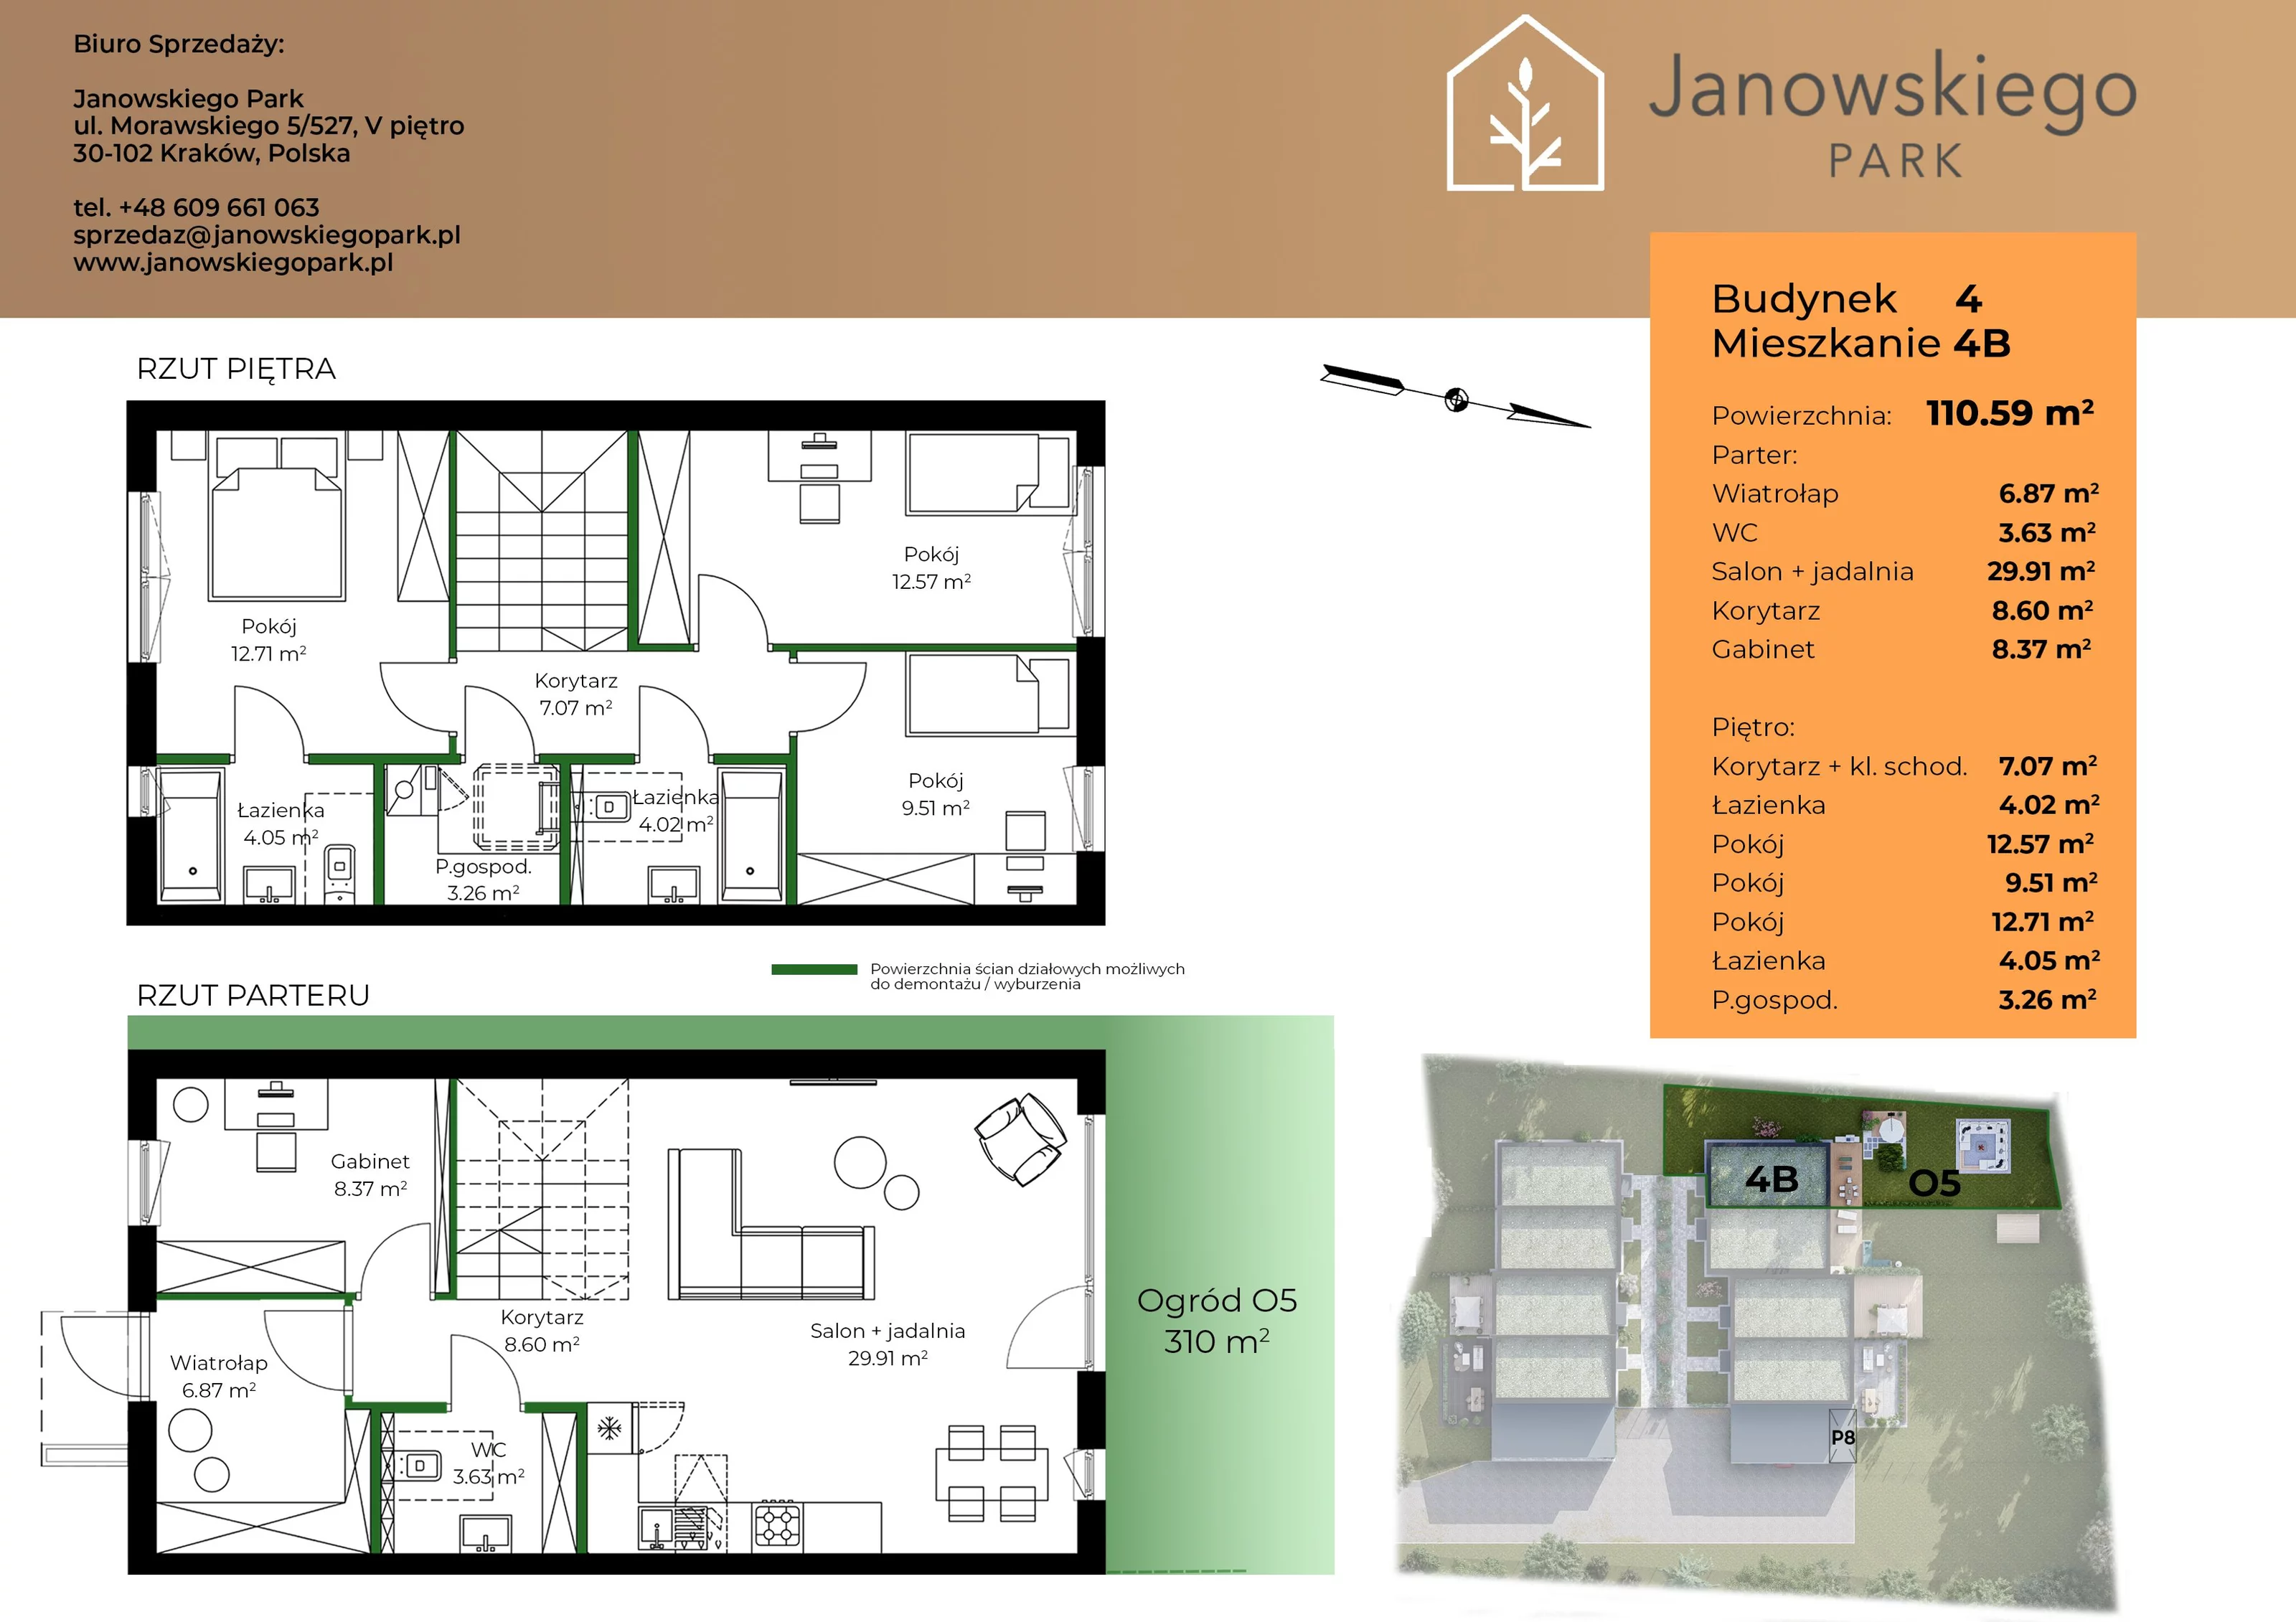 Mieszkanie 110,59 m², parter, oferta nr B4-4B, Janowskiego Park, Kraków, Swoszowice, Kliny Borkowskie, ul. Jana Janowskiego